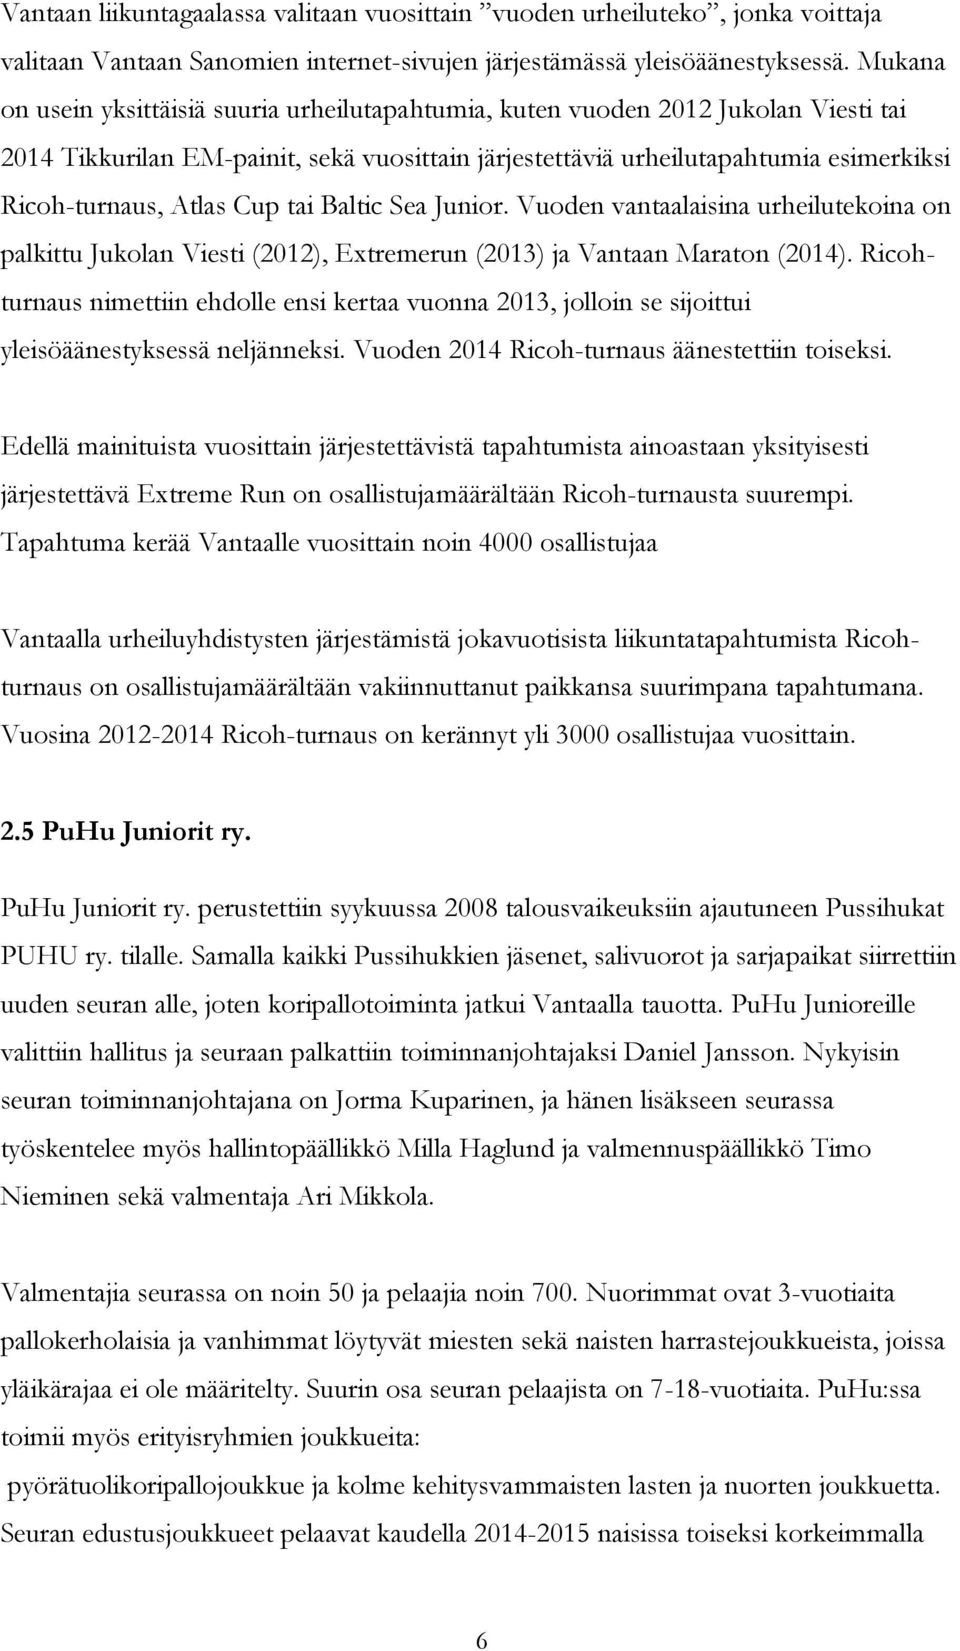 Cup tai Baltic Sea Junior. Vuoden vantaalaisina urheilutekoina on palkittu Jukolan Viesti (2012), Extremerun (2013) ja Vantaan Maraton (2014).